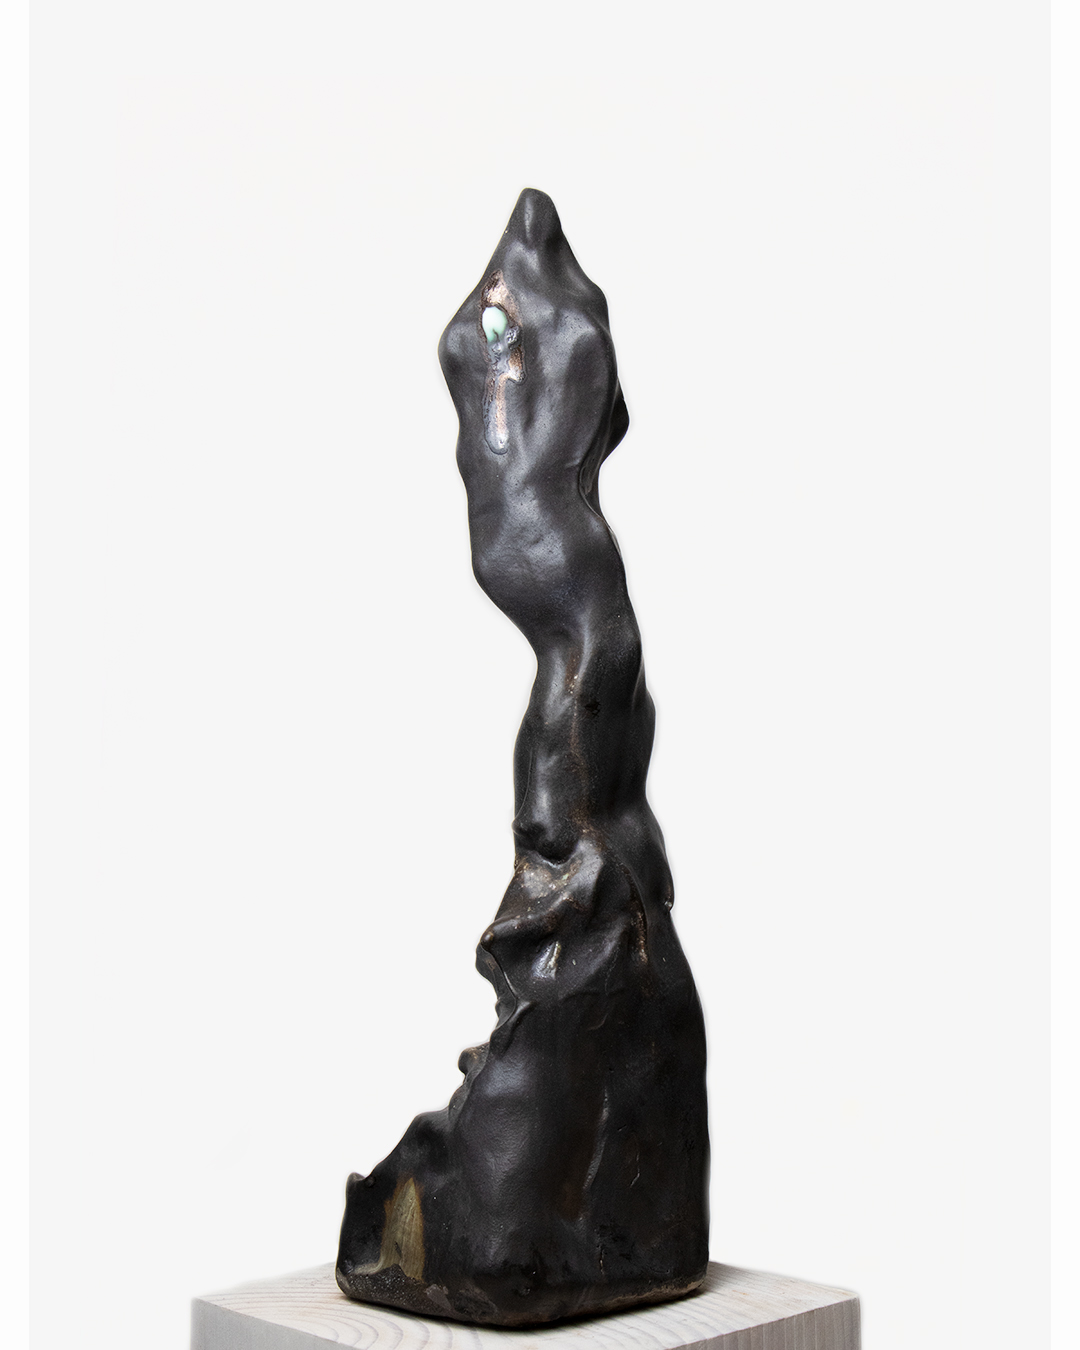 Nicolas-Pierre Réveillard, sculpture "Ascension" 7